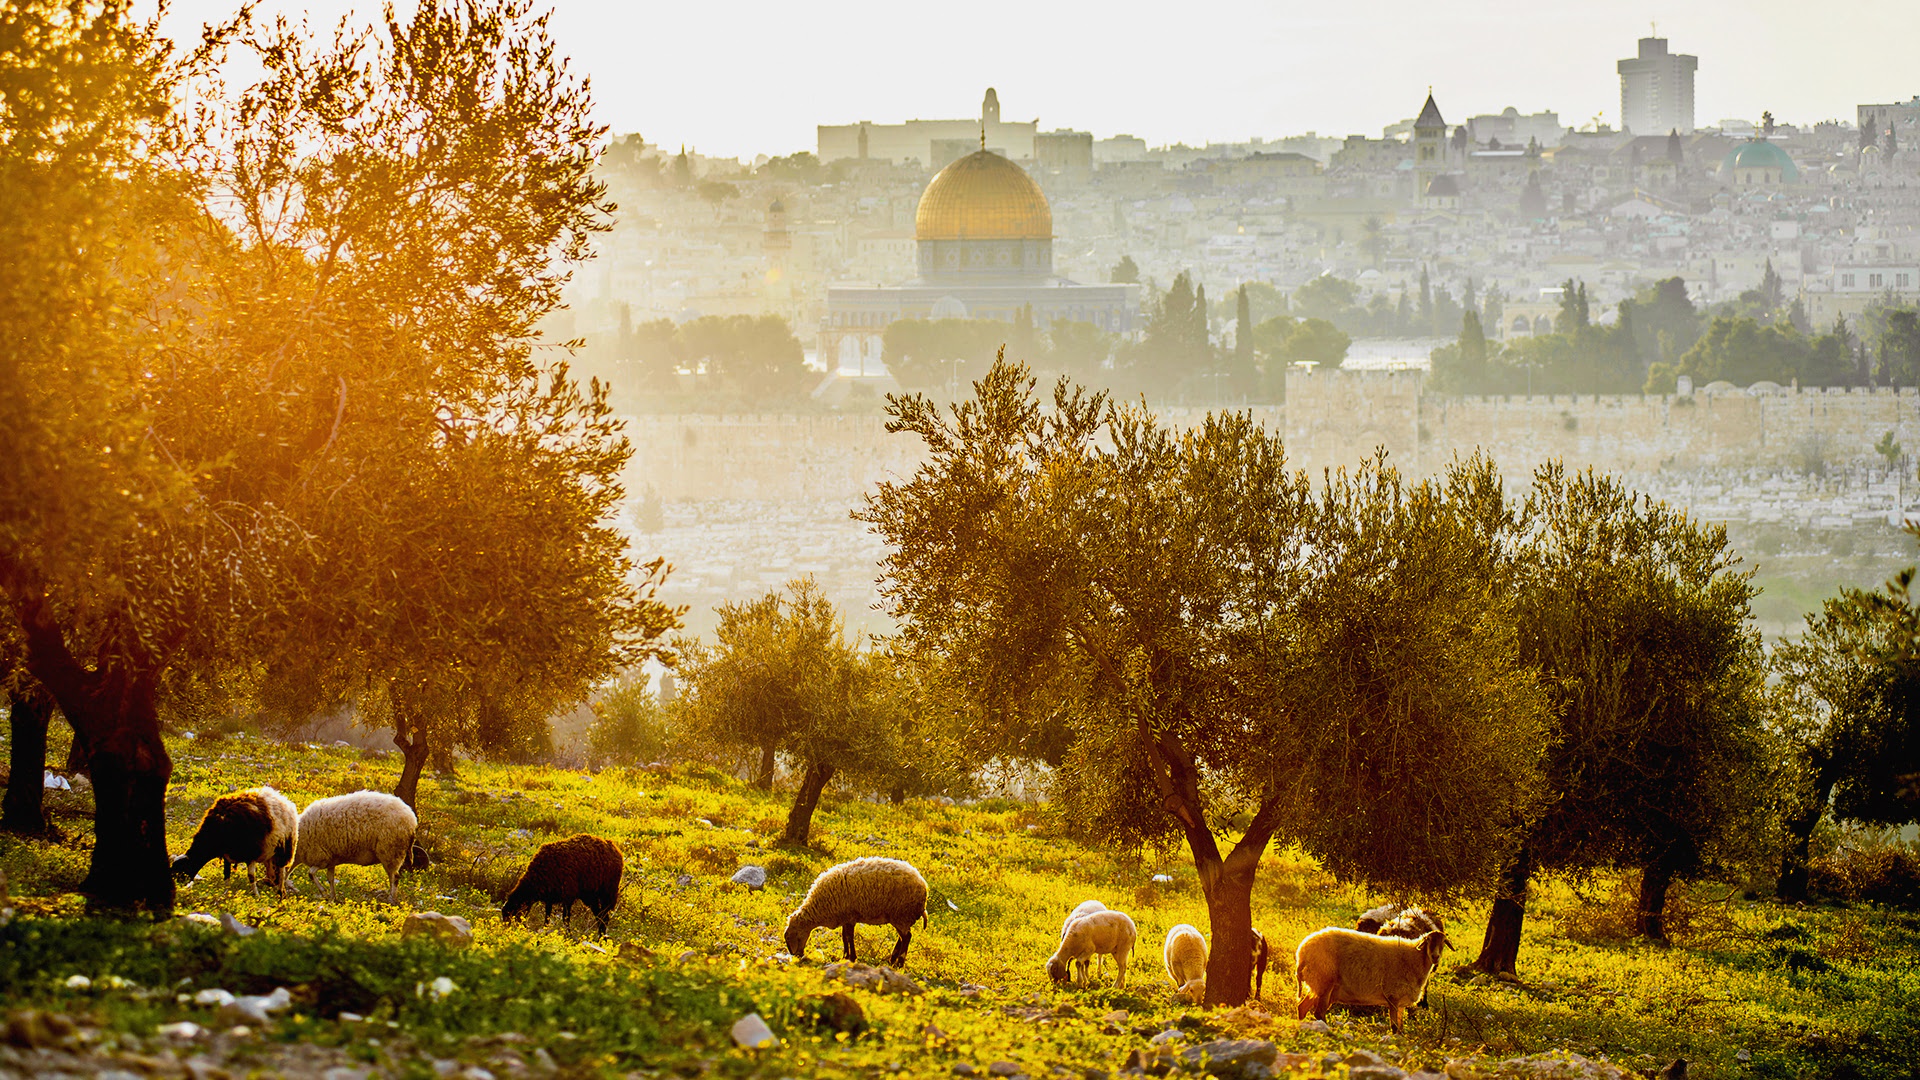 Excursion to Jerusalem and Bethlehem